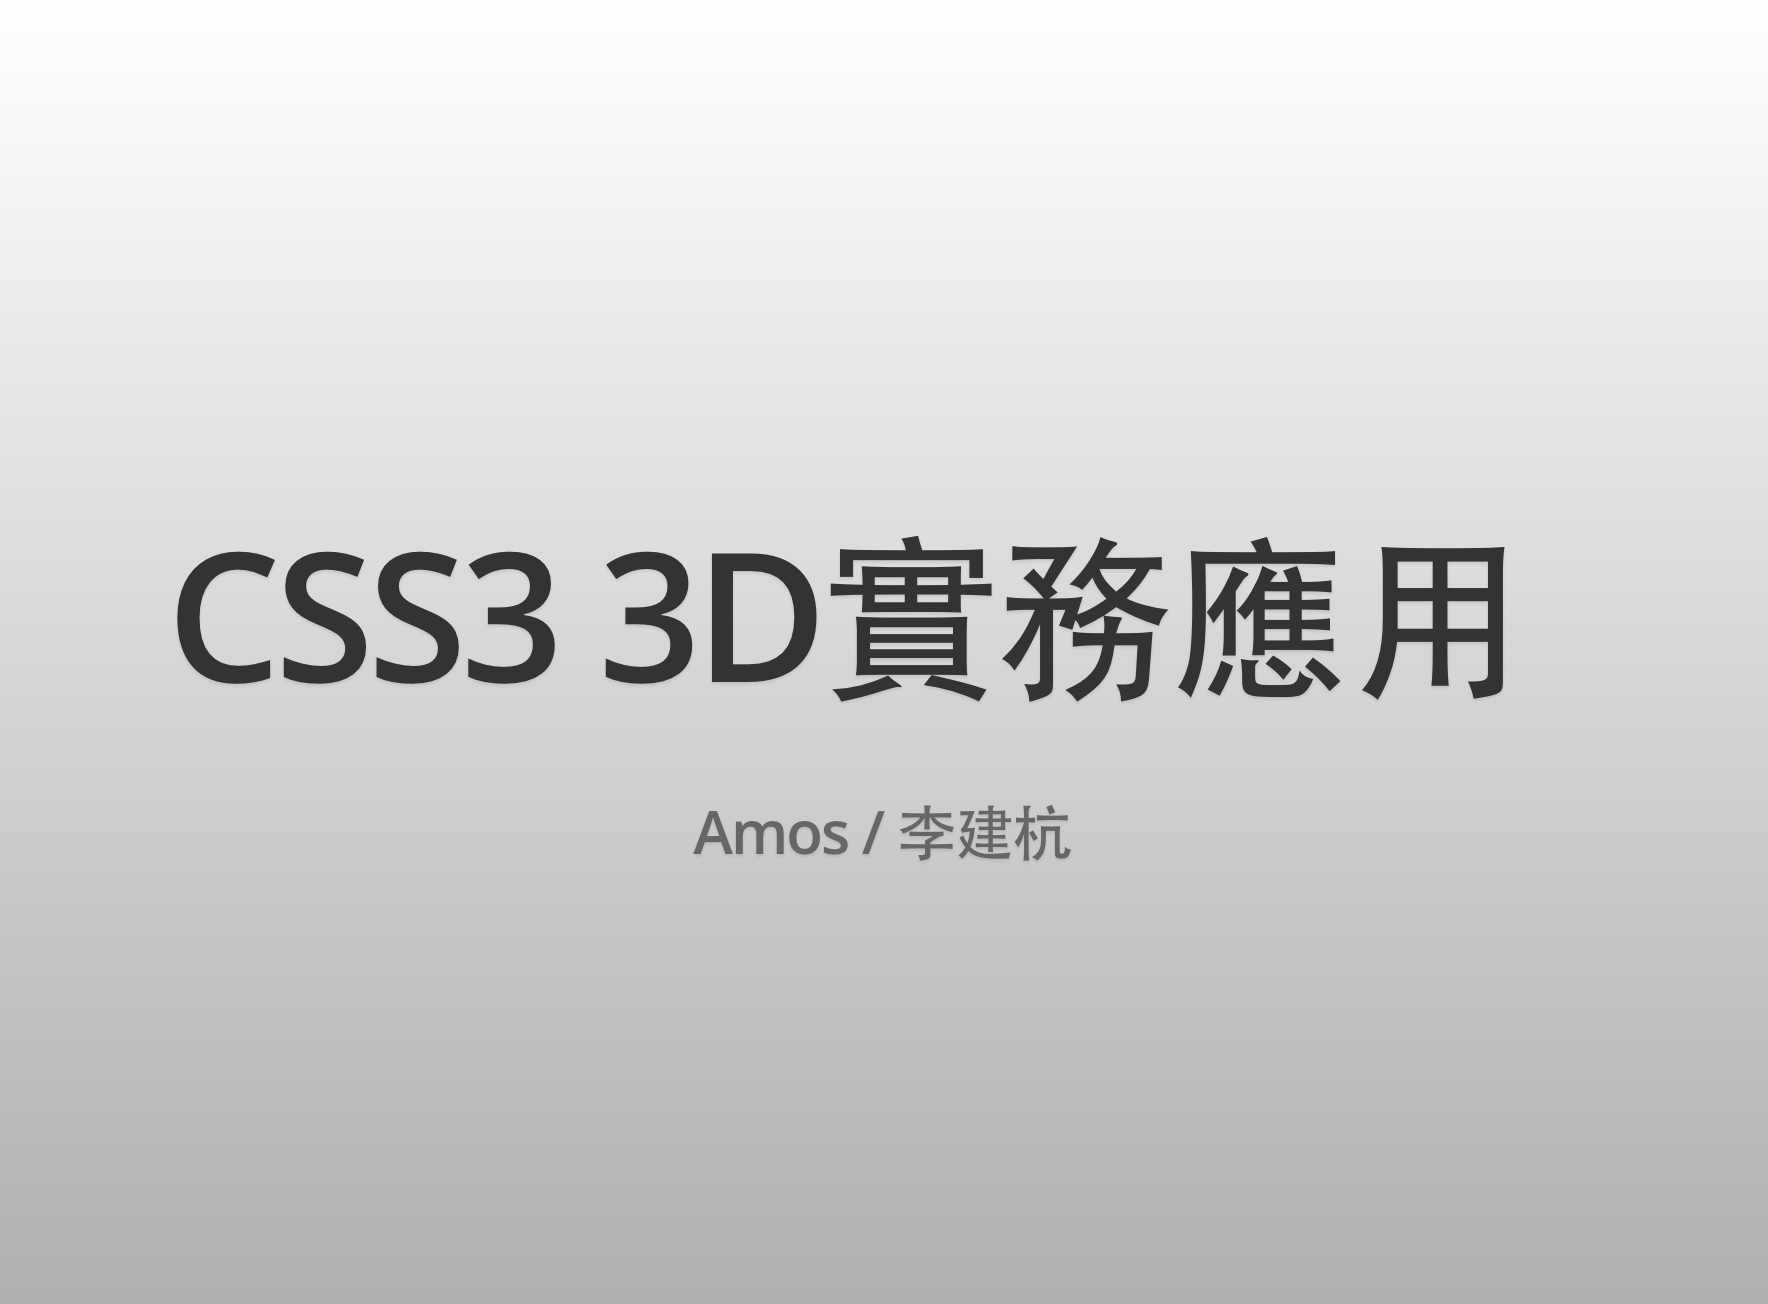 Logo Css Css3 Biểu - Ảnh miễn phí trên Pixabay - Pixabay